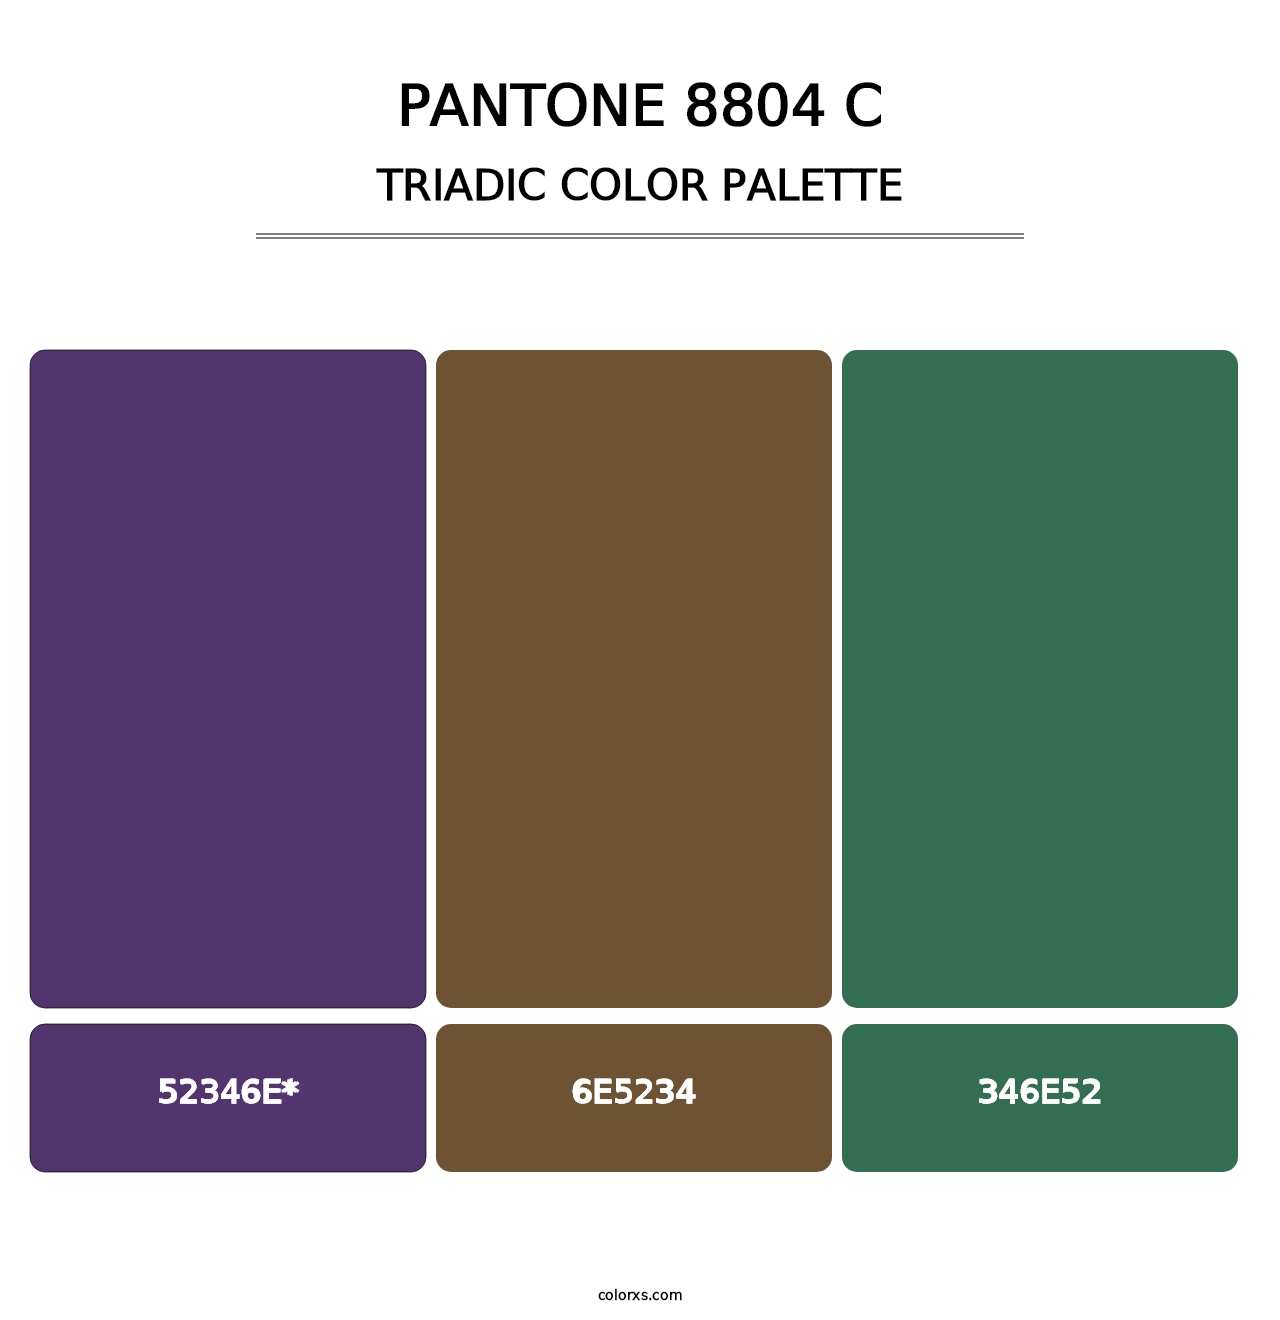 PANTONE 8804 C - Triadic Color Palette